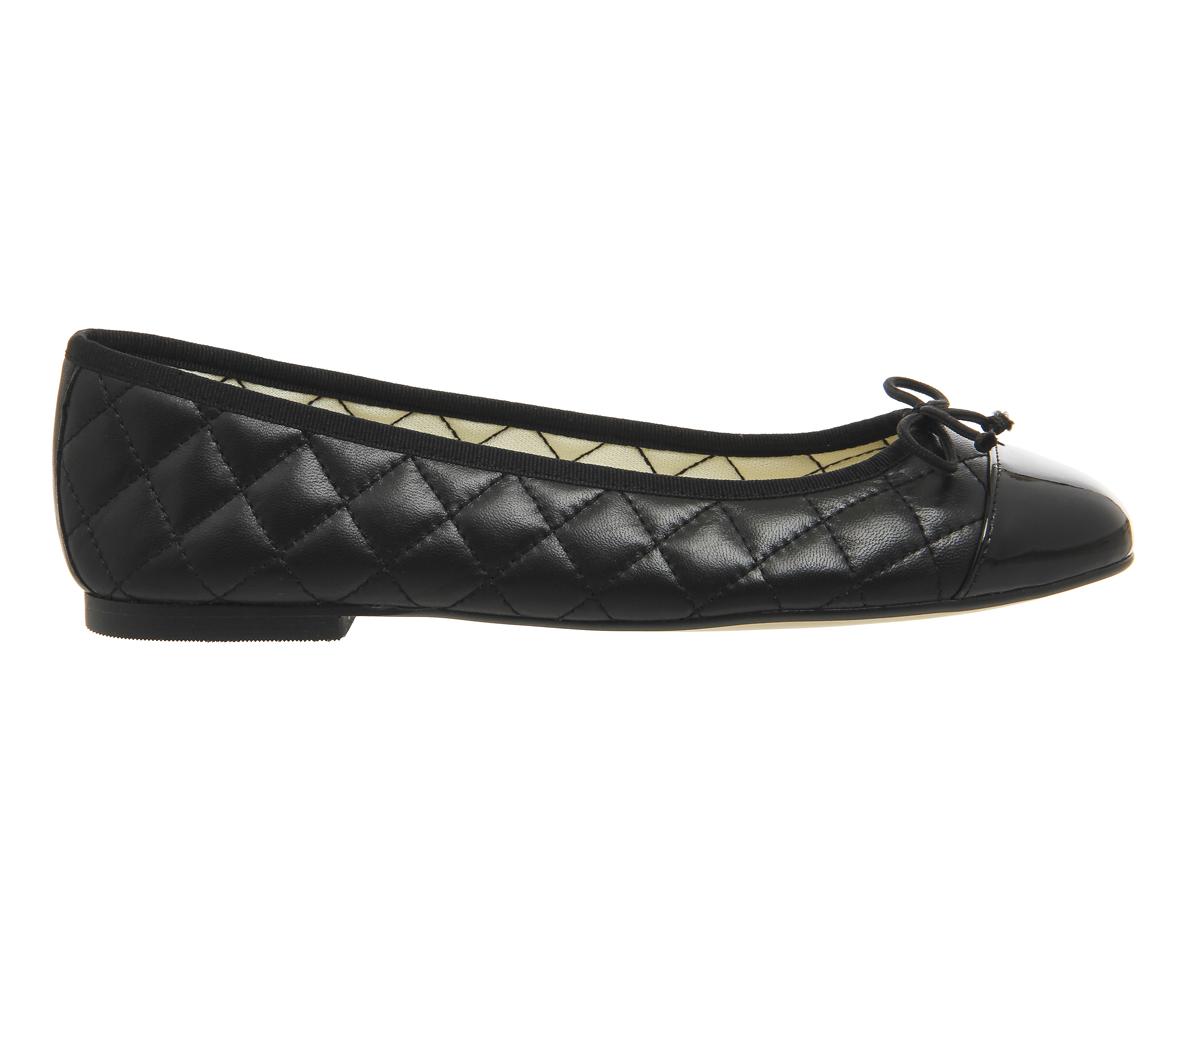 OFFICE Cecilia Toe Cap Ballet Pumps Black Leather Patent - Flat Shoes ...